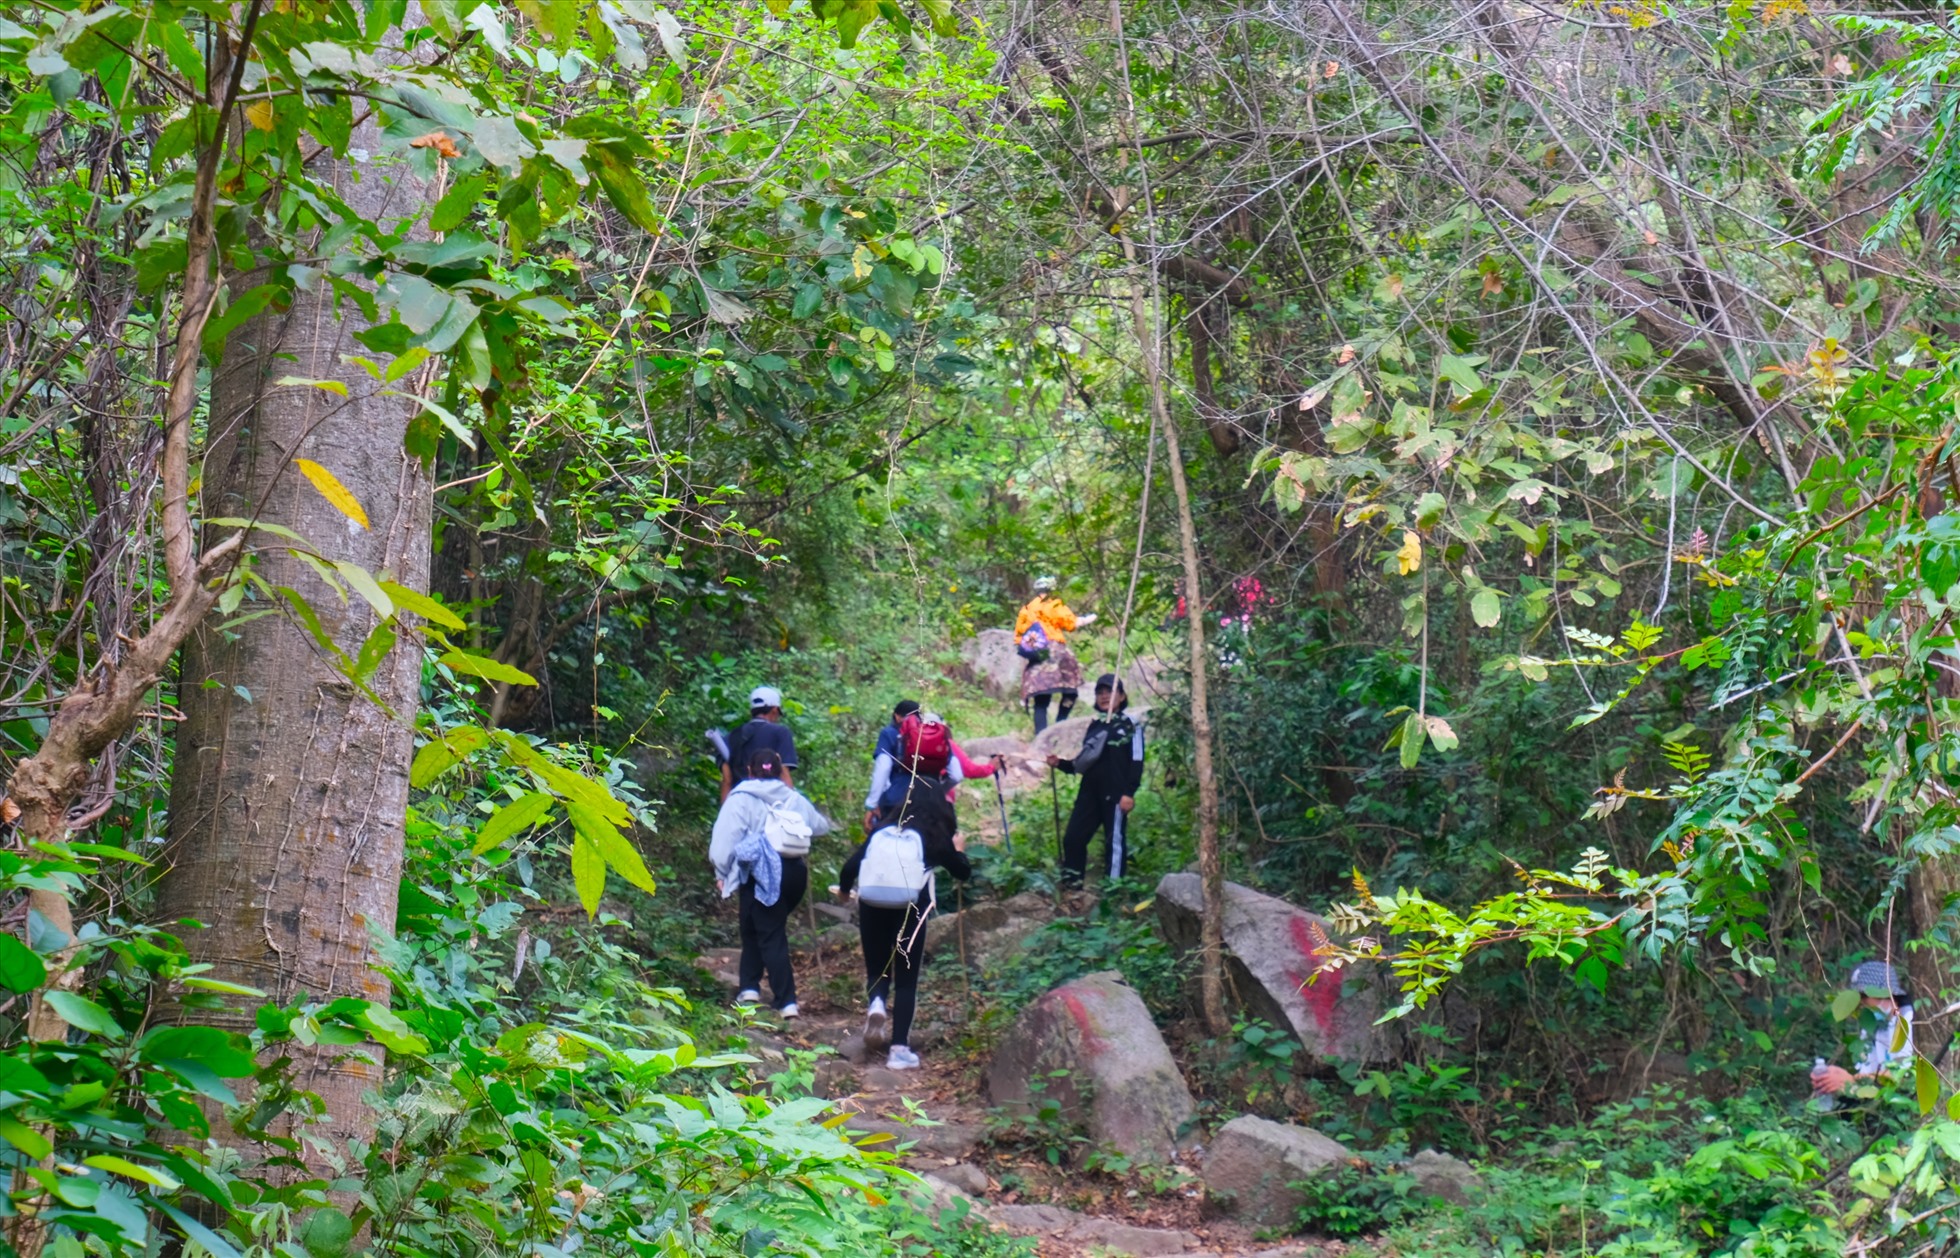 Đoàn trekking tiến vào khu vực núi Cấm khám phá thiên nhiên hoang dã, lần lượt đi qua các điểm: hàng còn, đường mòn, ngã 3 đường lên Điện cây Quế và chùa Phật nhỏ, Điện Cây Quế, Suối Thanh Long, Vườn xoài.